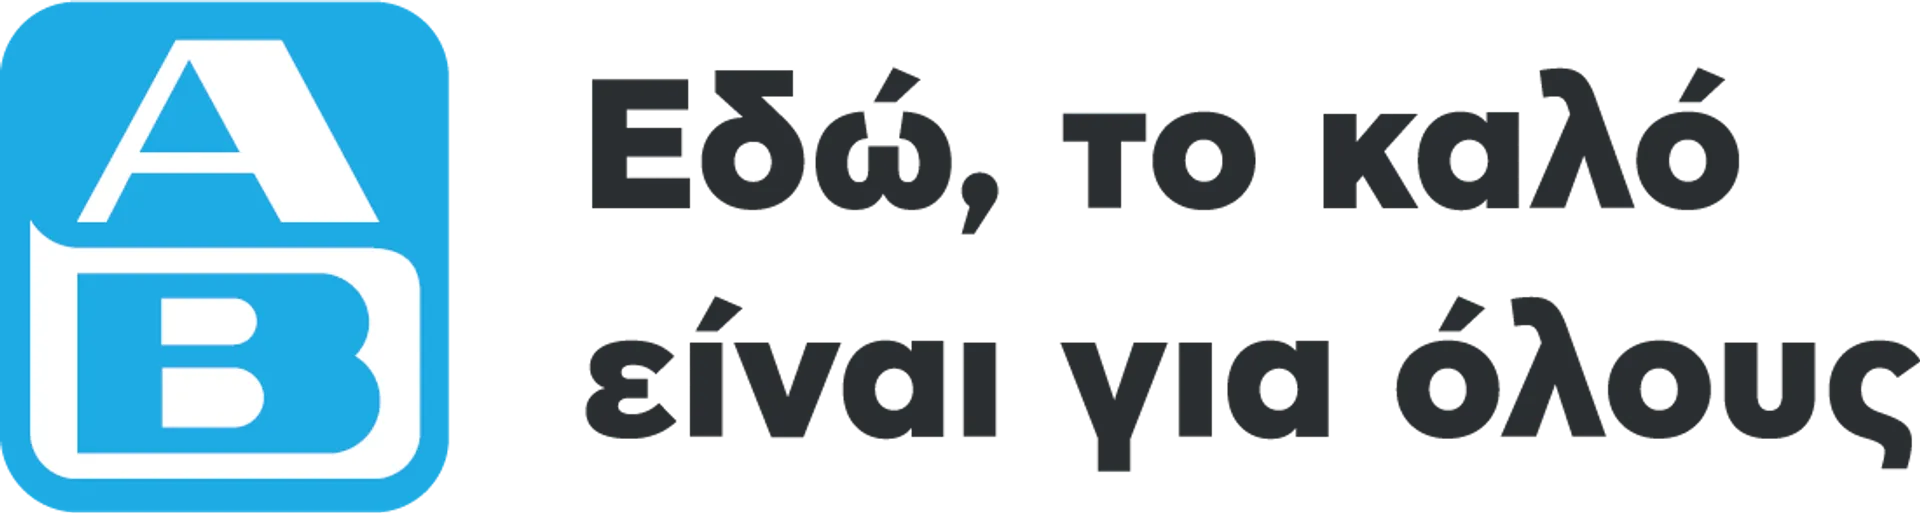 ΑΒ Βασιλόπουλος logo